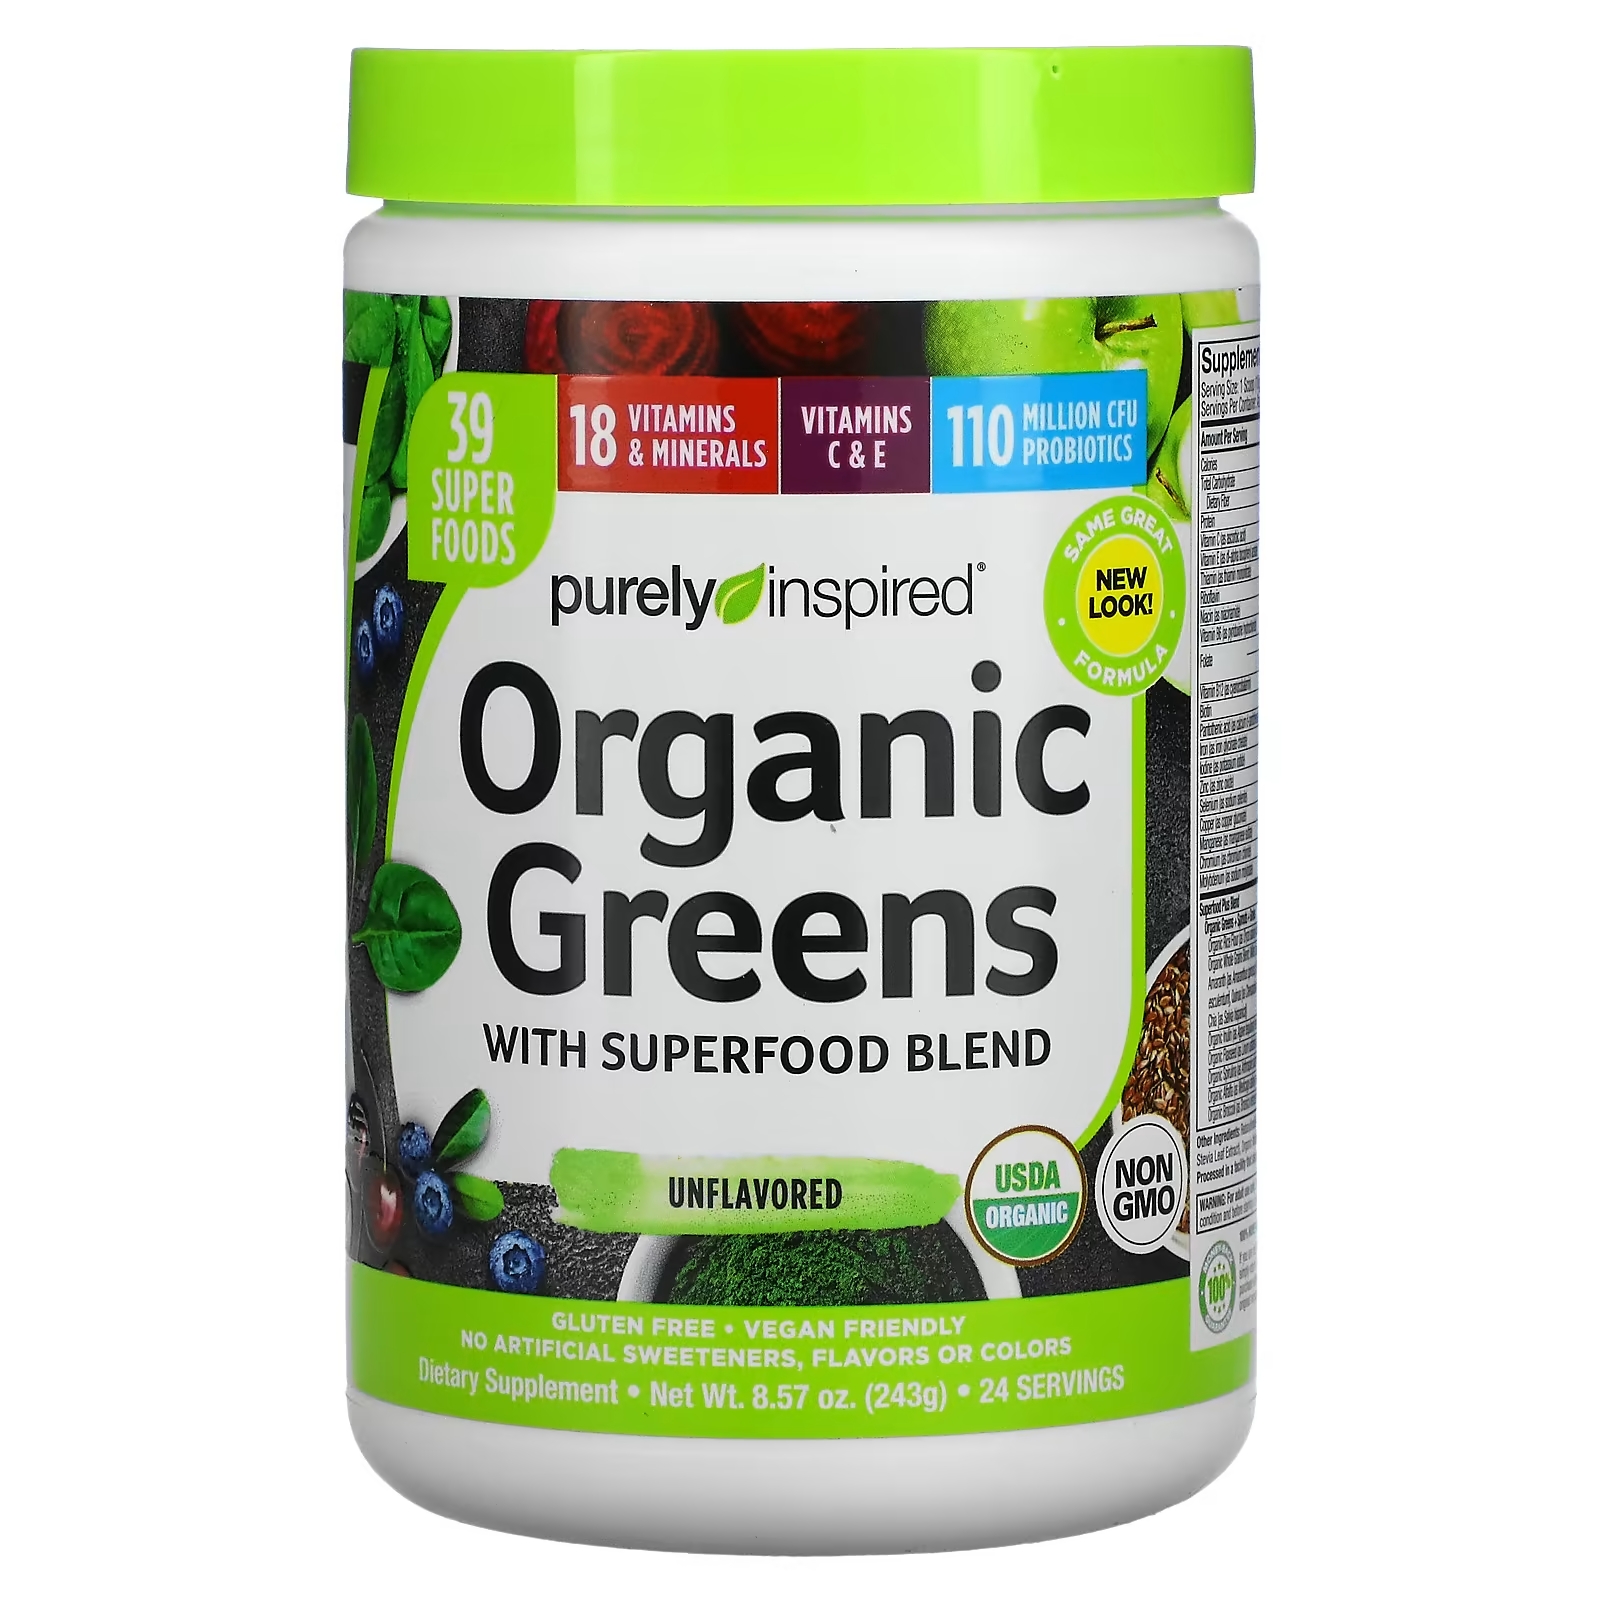 Смесь с Органической Зеленью и Суперфудами Purely Inspired purely inspired смесь с органической зеленью и суперфудами натуральный вкус 243 г 8 57 унции